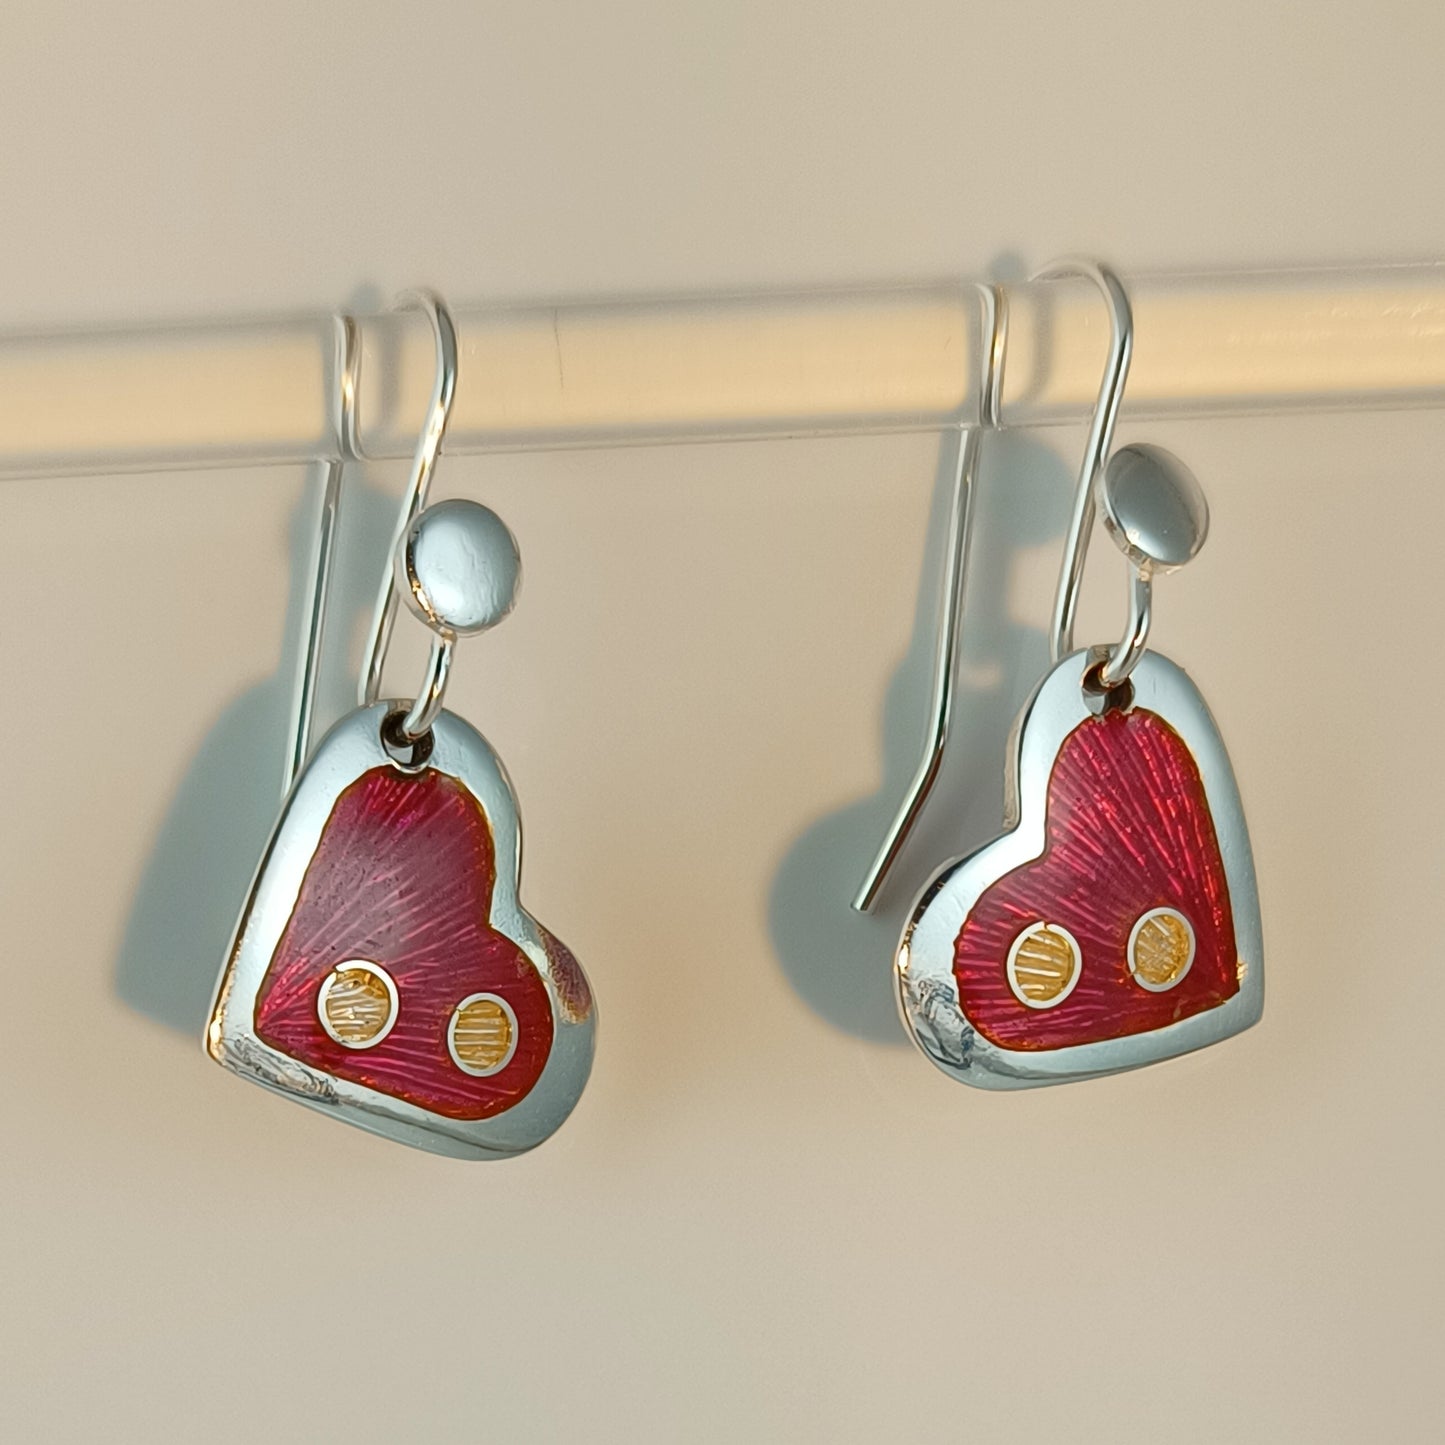 Earrings hot pink heart, Champleve enamels on Fine Silver (999), Handmade in Australia